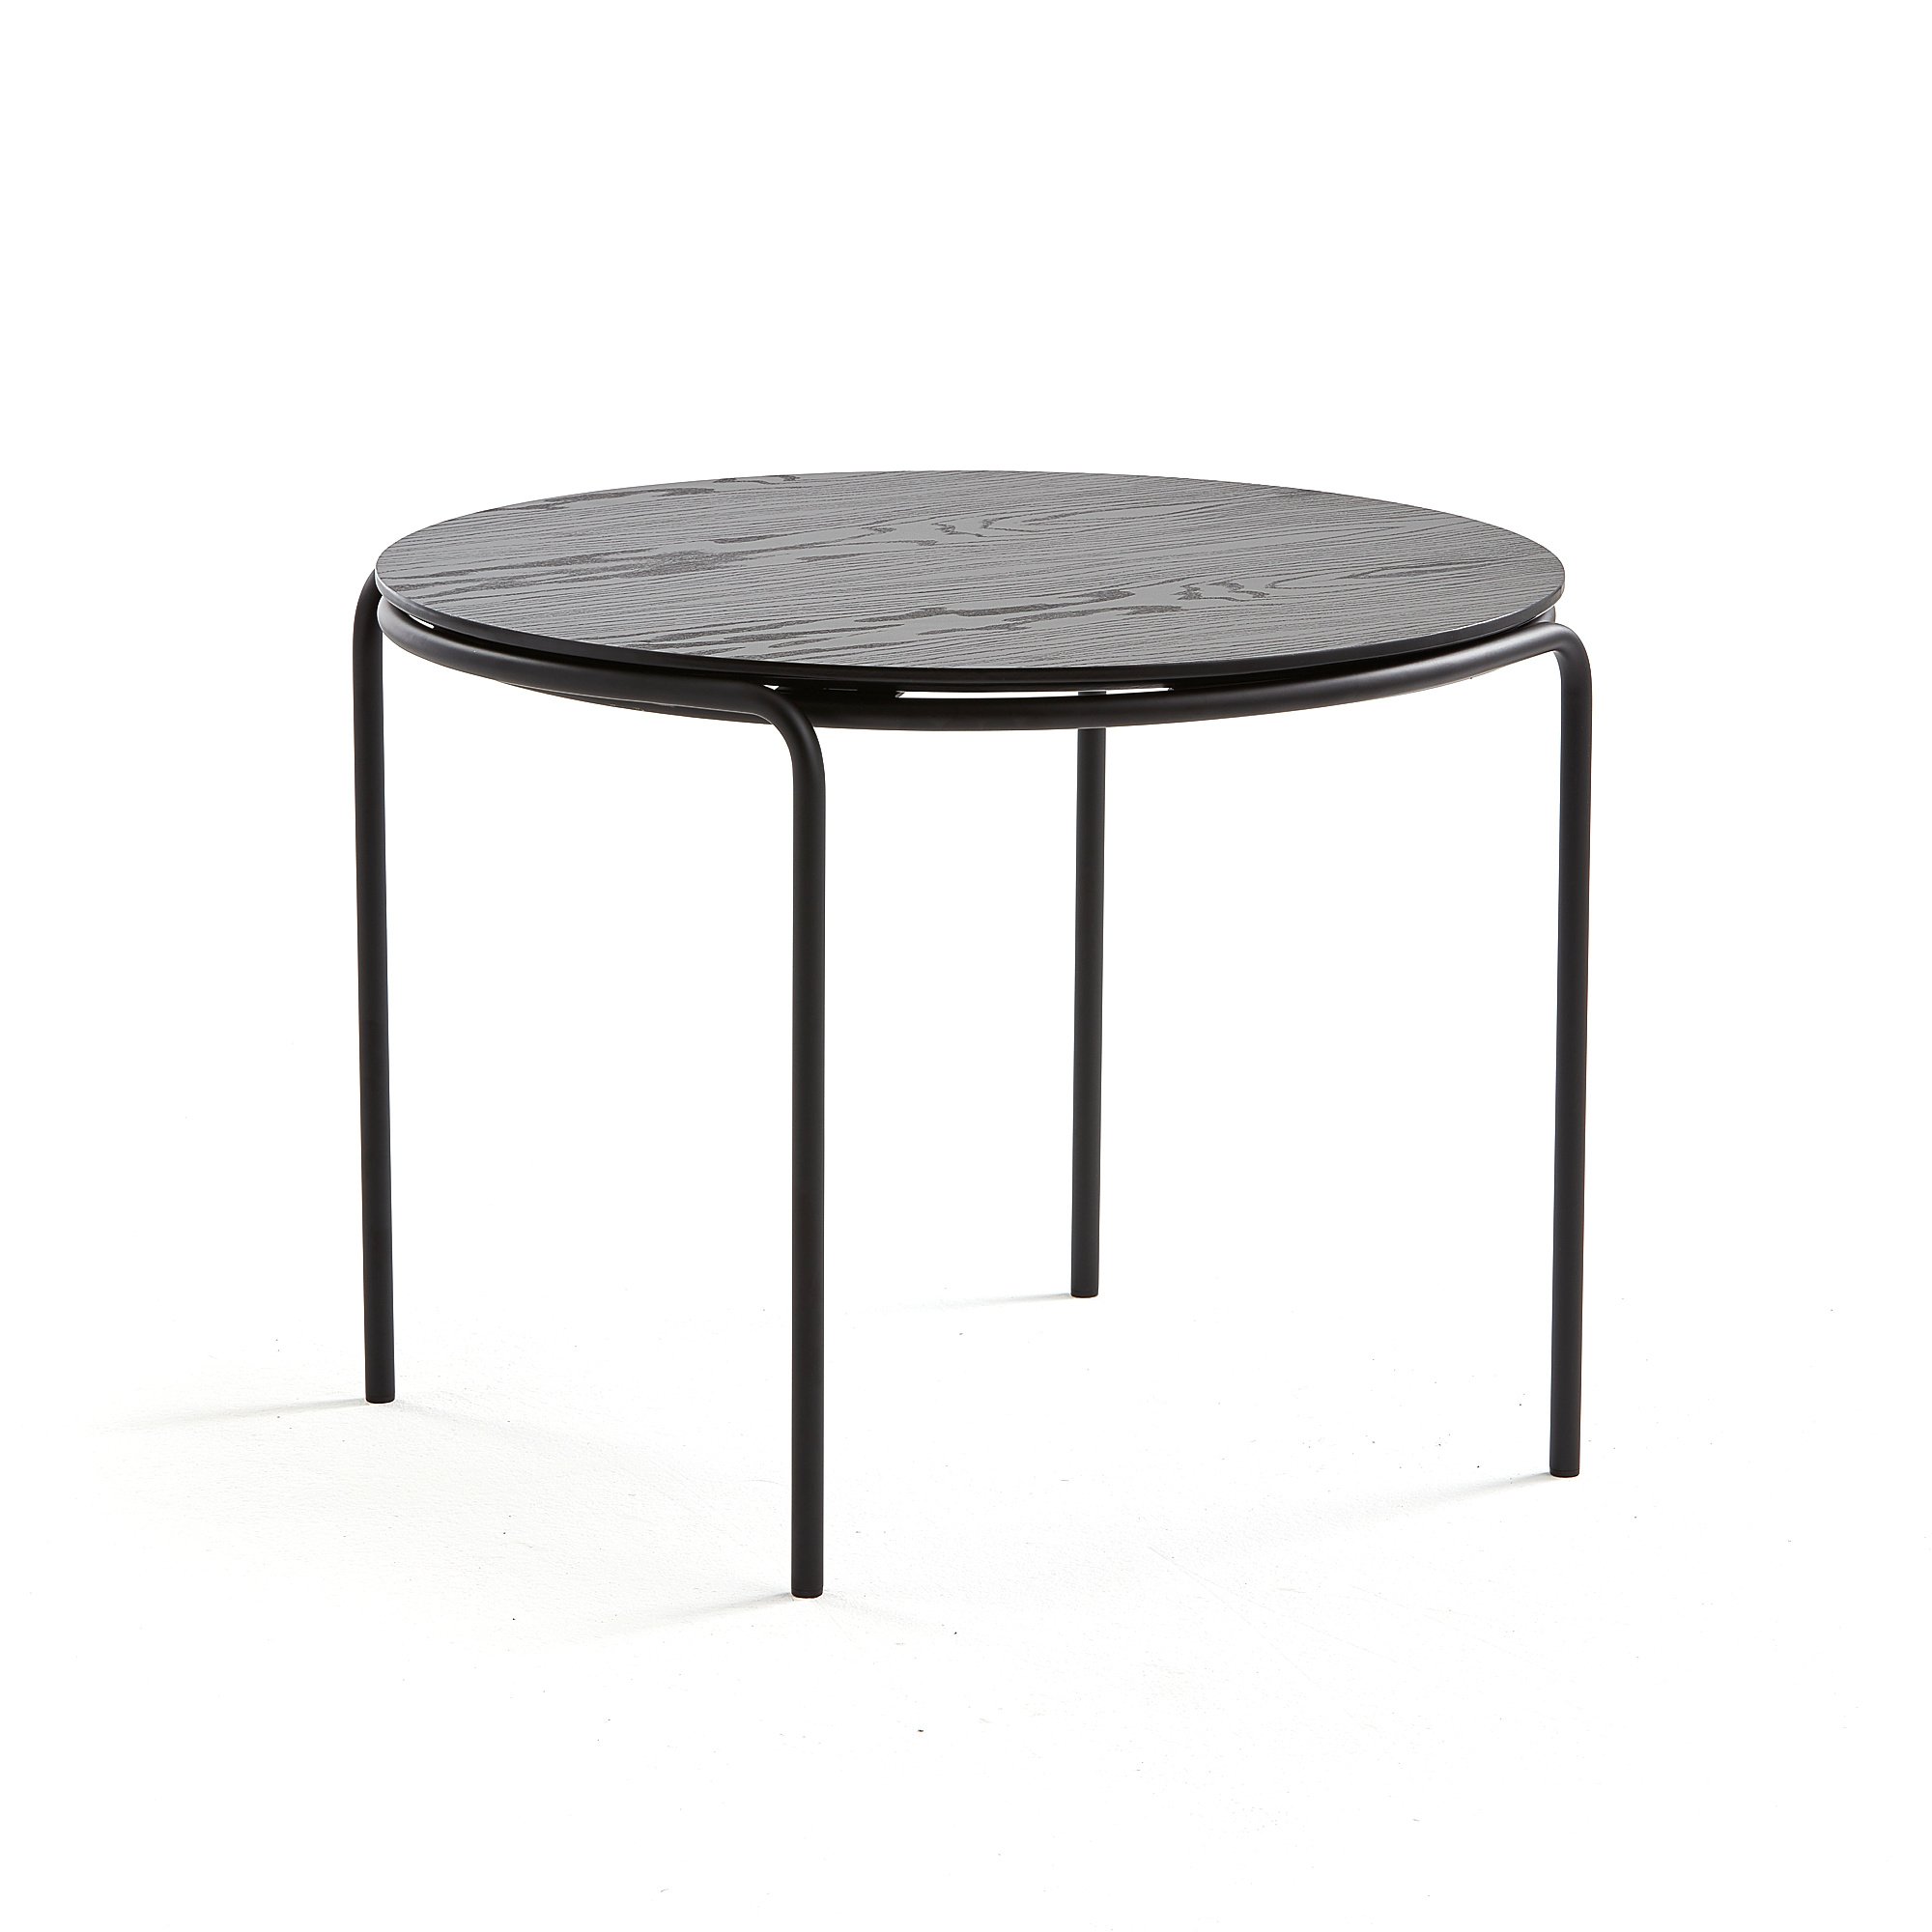 Konferenční stolek ASHLEY, Ø770 mm, výška 530 mm, černá, černá deska